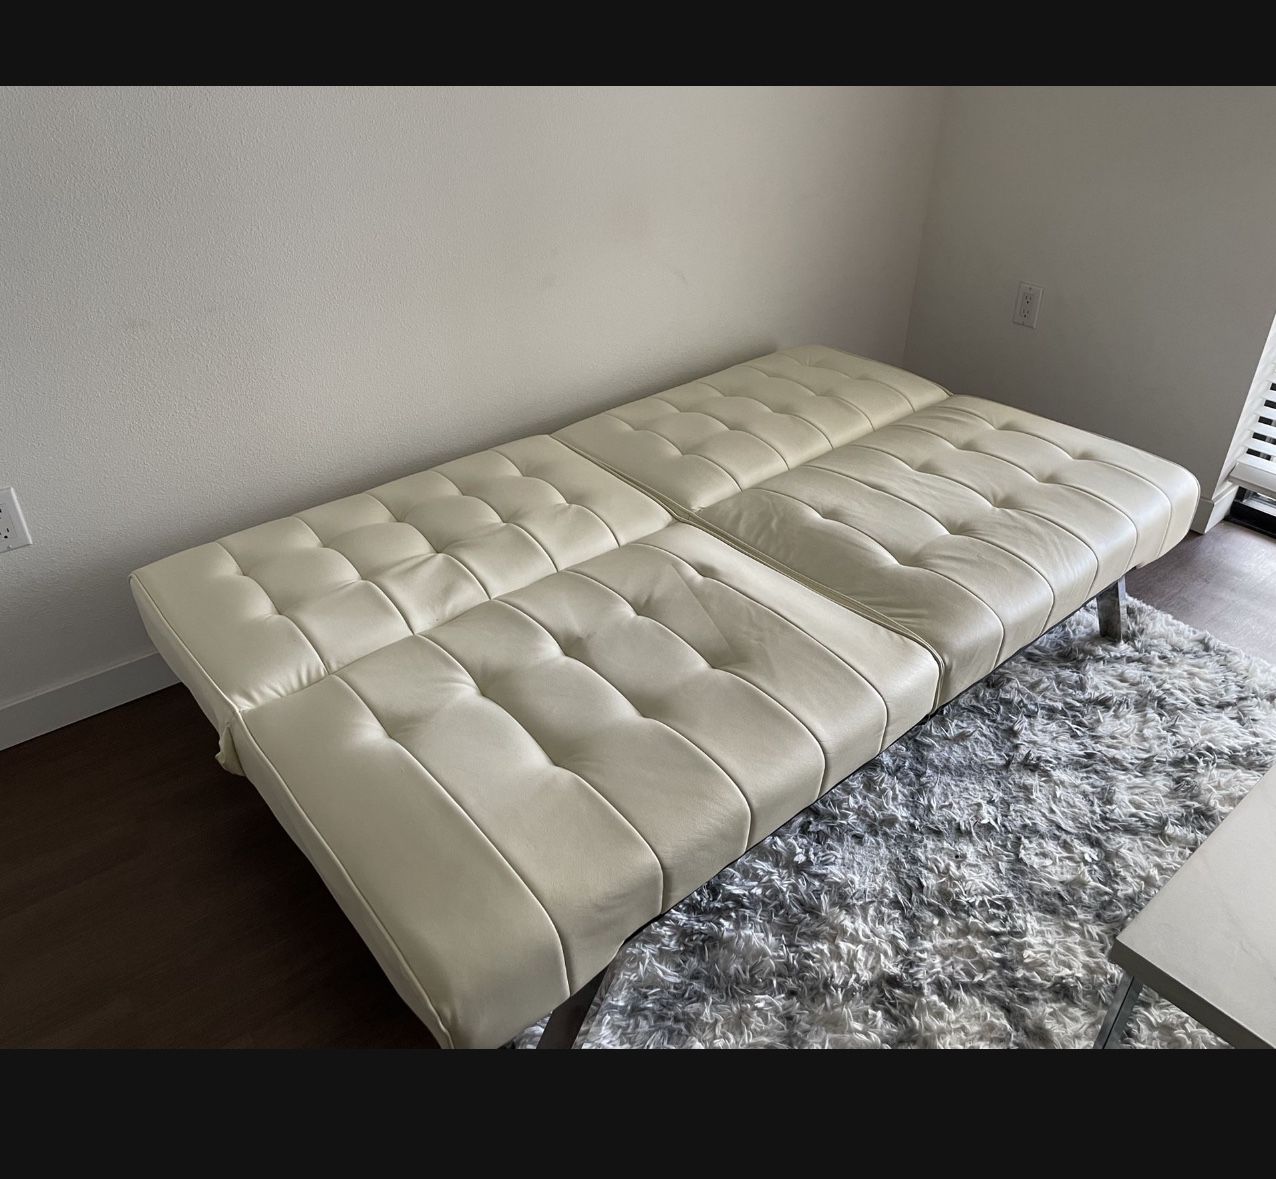 Leather Foldable Futon Sofa Bed